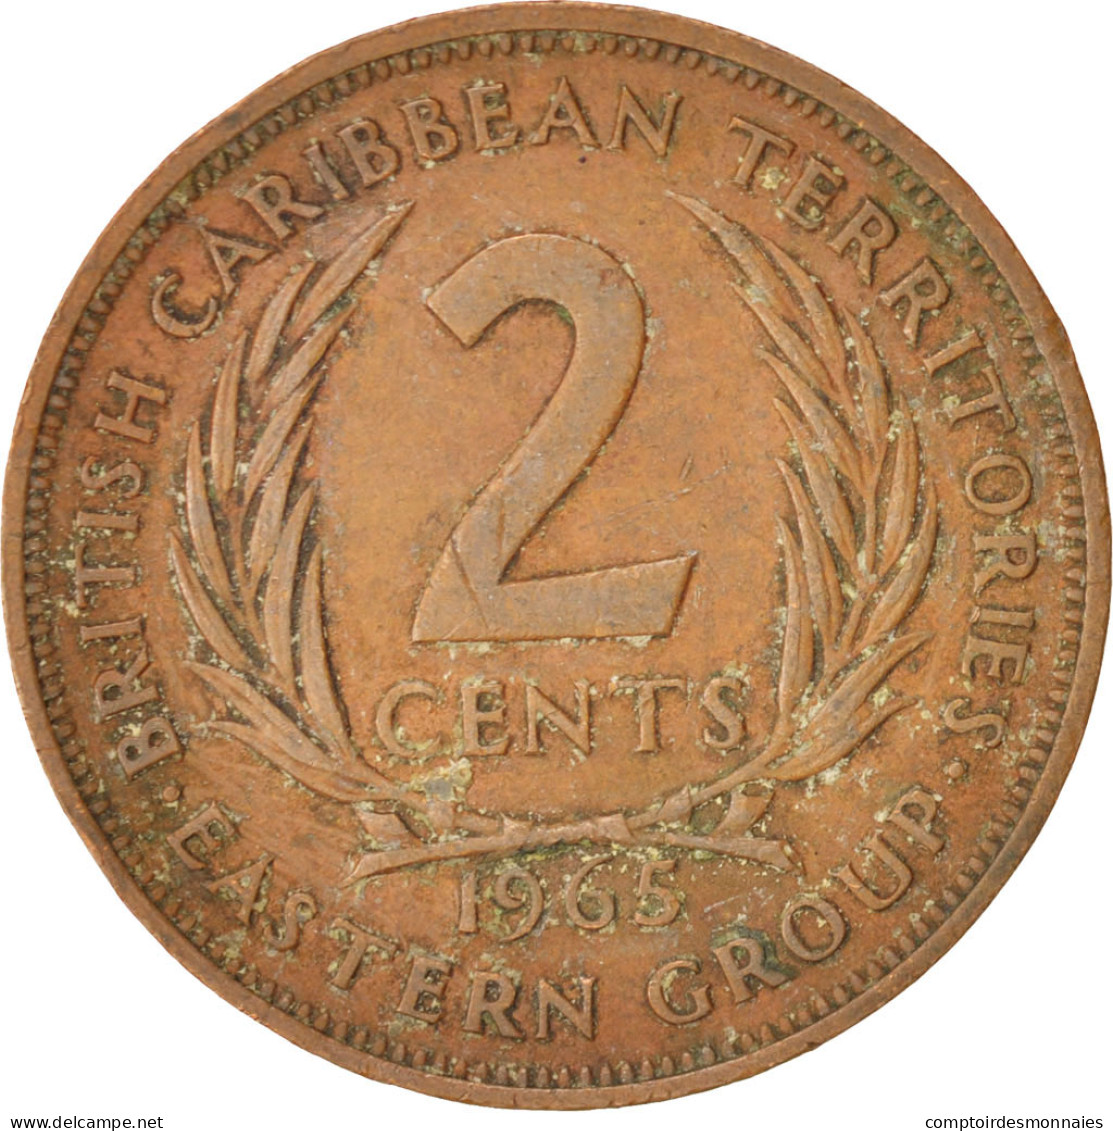 Monnaie, Etats Des Caraibes Orientales, Elizabeth II, 2 Cents, 1965, TB+ - Territoires Britanniques Des Caraïbes